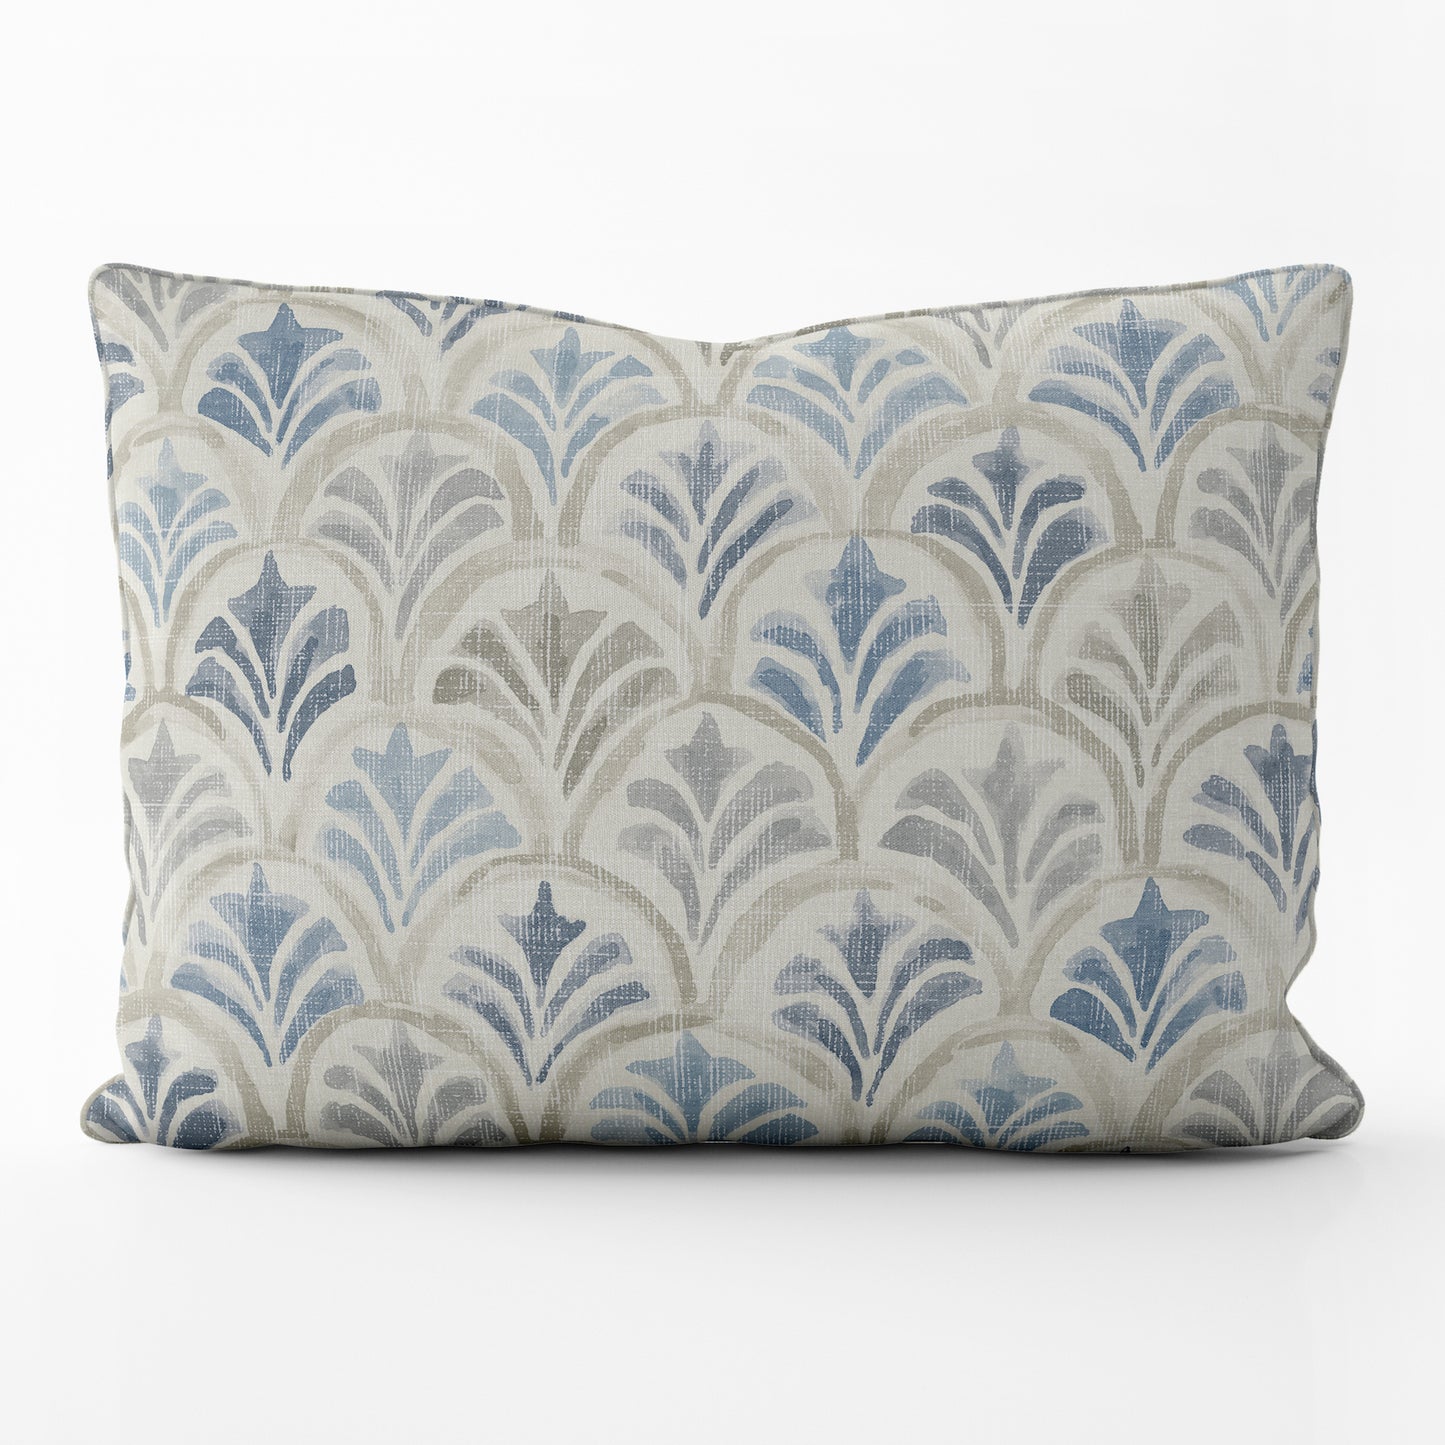 Decorative Pillows in Countess Delft Blue Scallop Watercolor